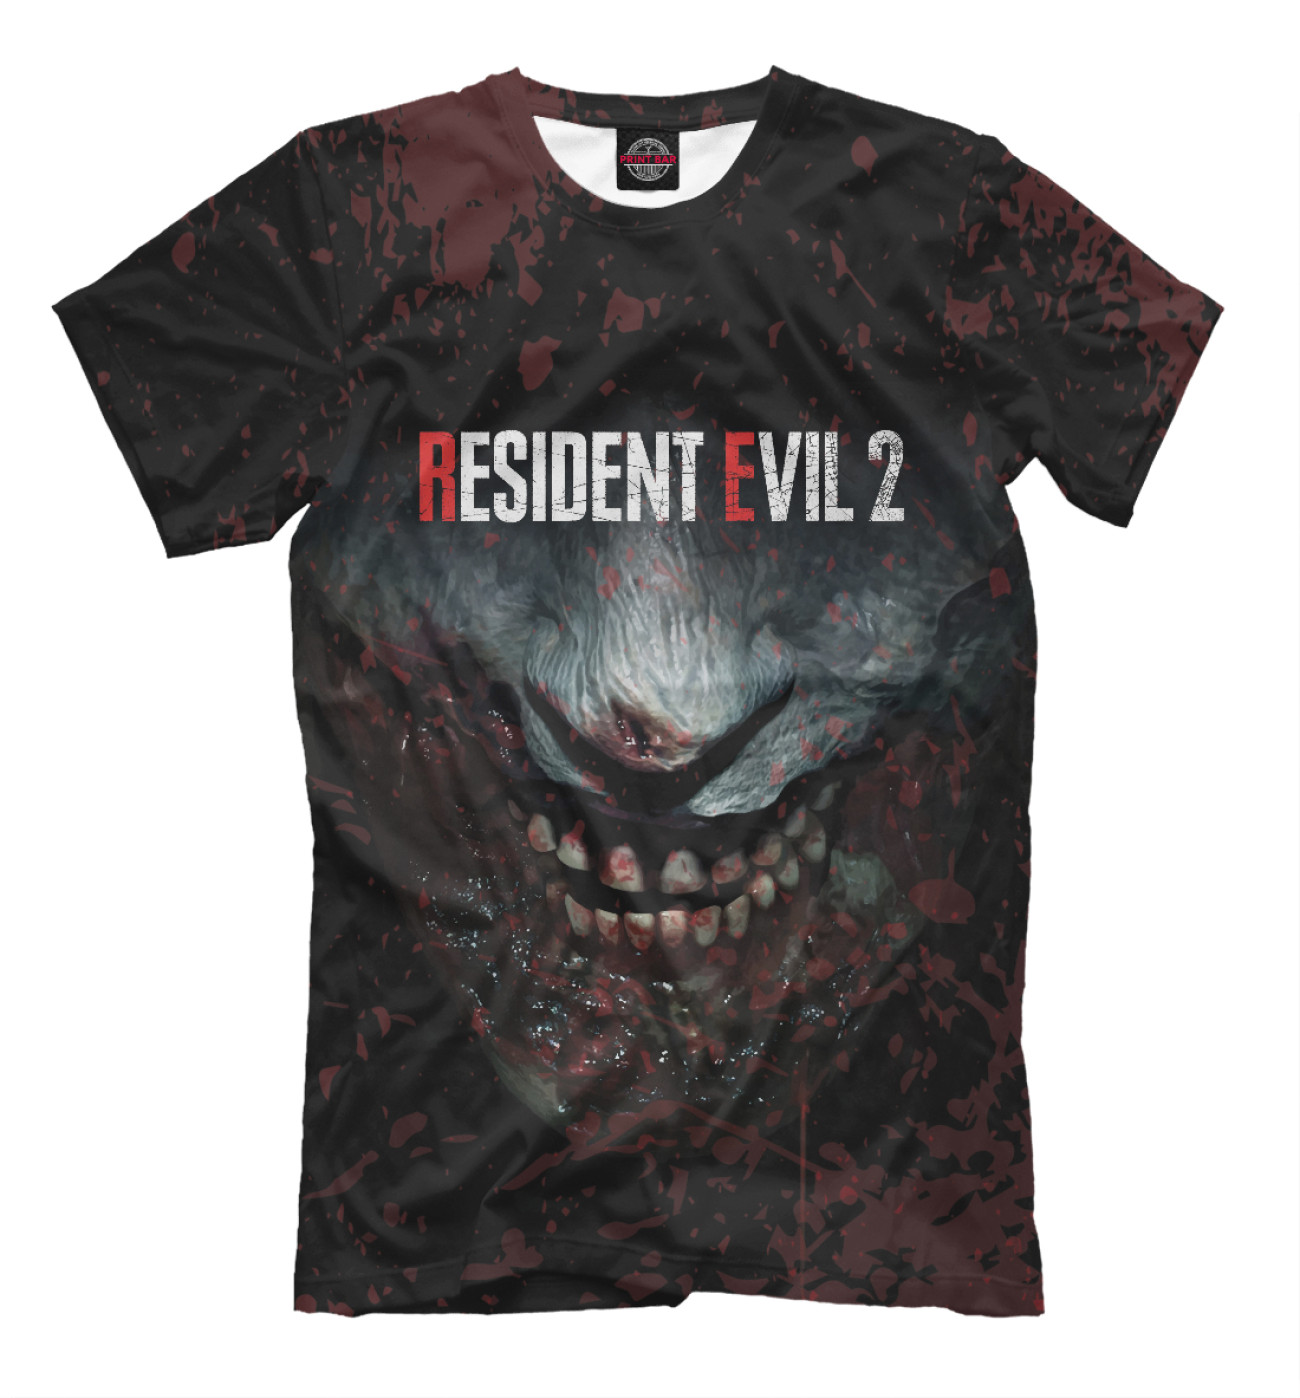 Мужская Футболка Resident Evil 2 Remake, артикул: RSV-706224-fut-2